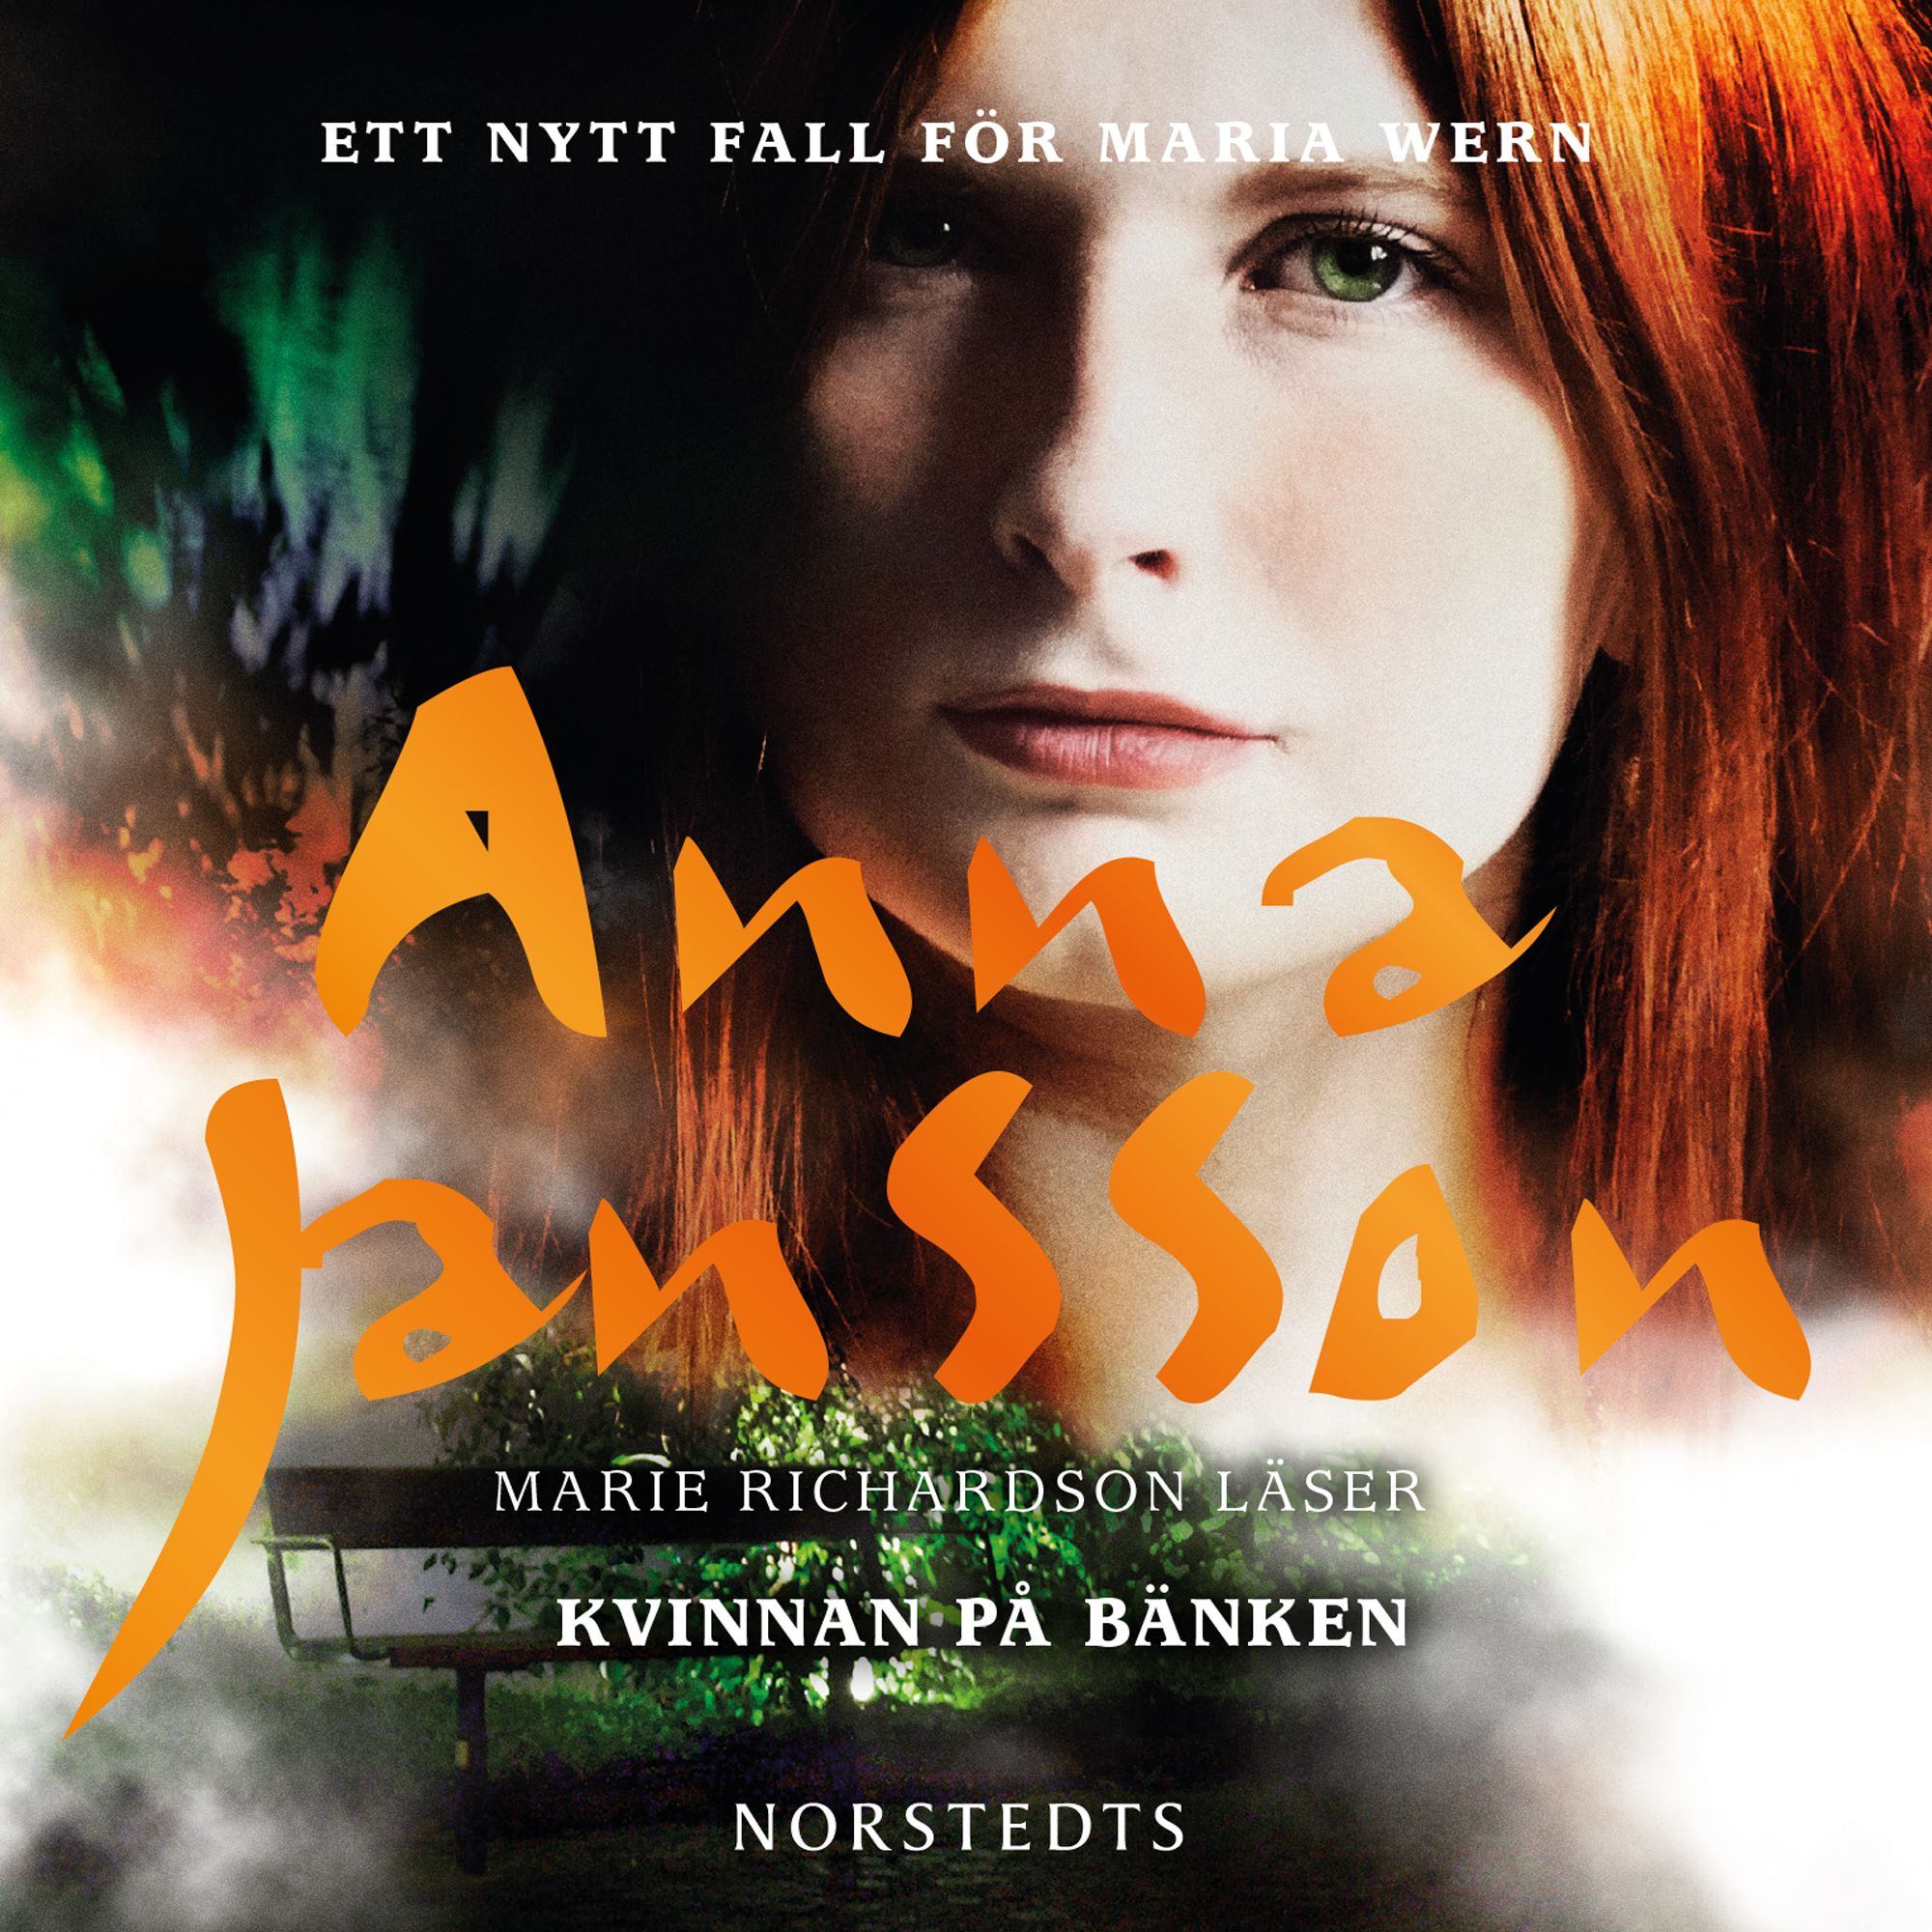 Kvinnan på bänken, audiobook by Anna Jansson